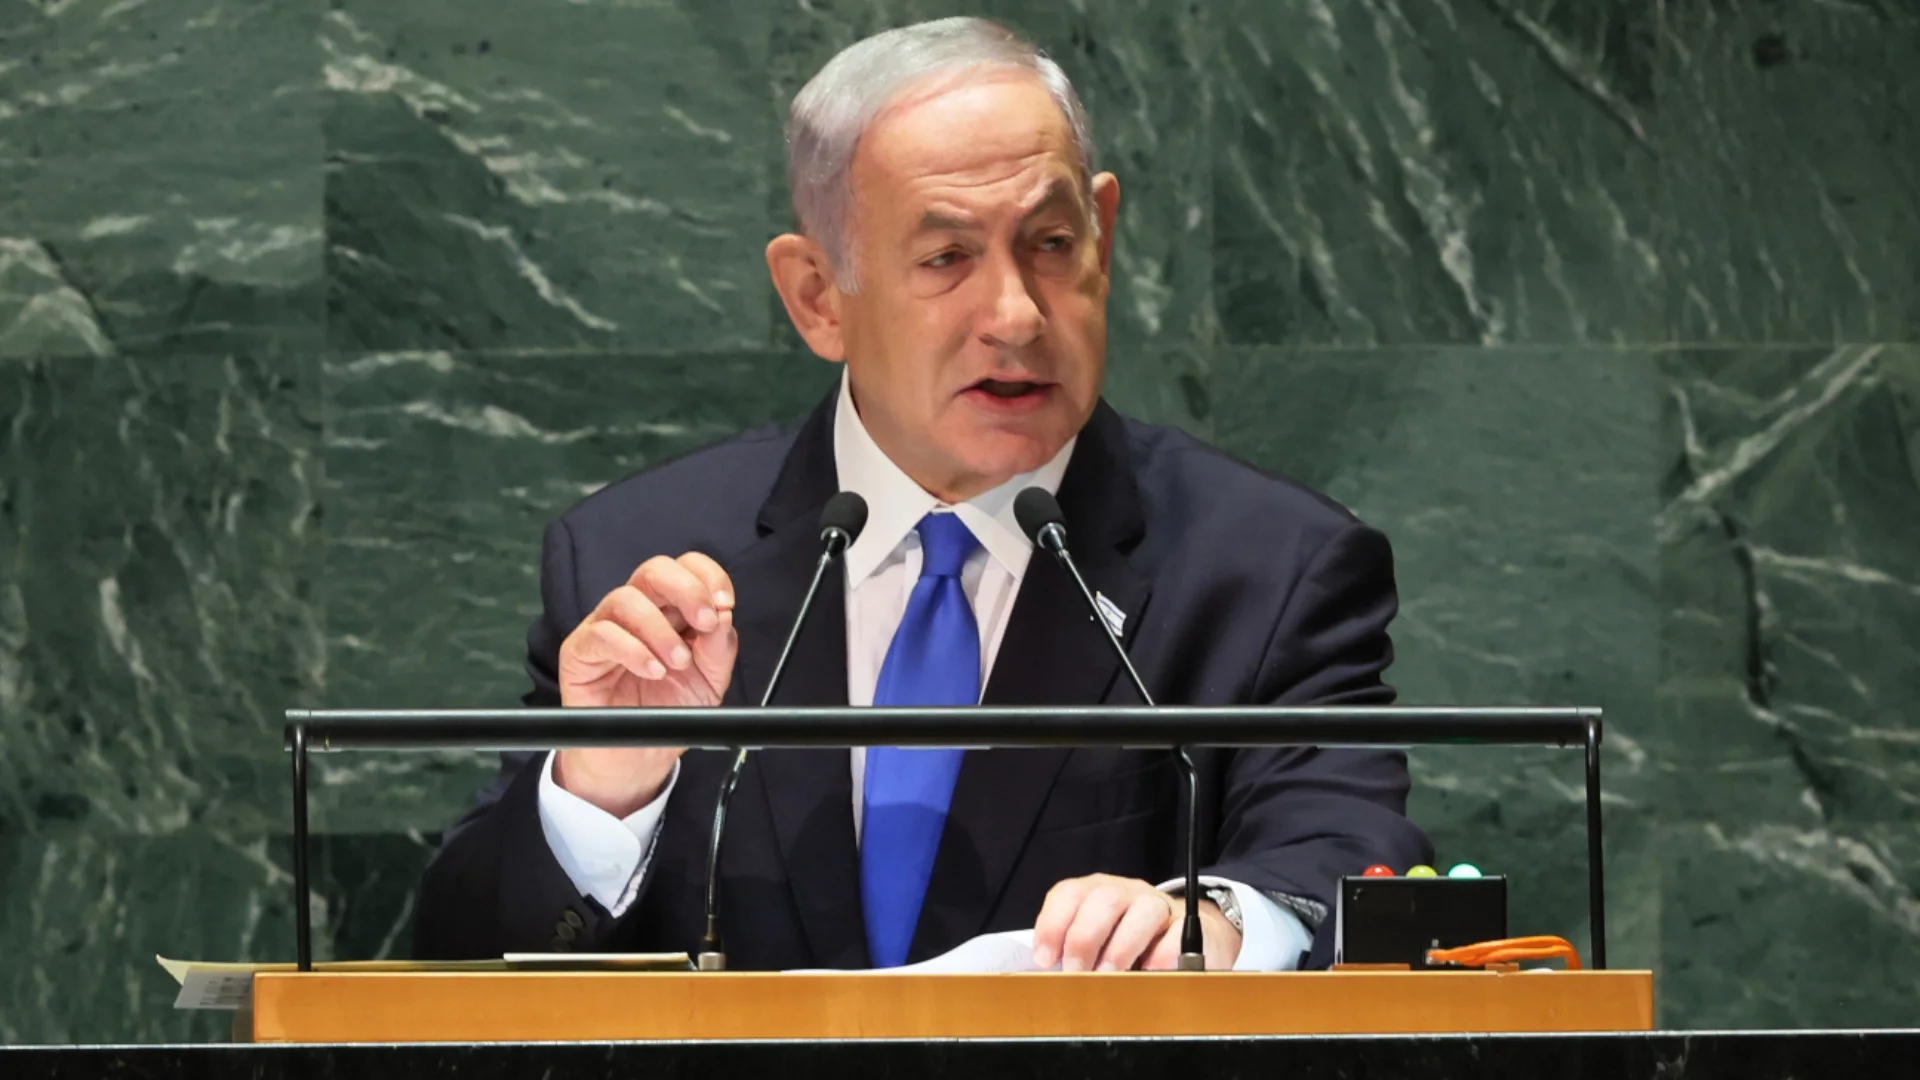 Реакцията на Нетаняху след изявлението на Байдън: Войната в Газа ще приключи след елиминирането на "Хамас" 